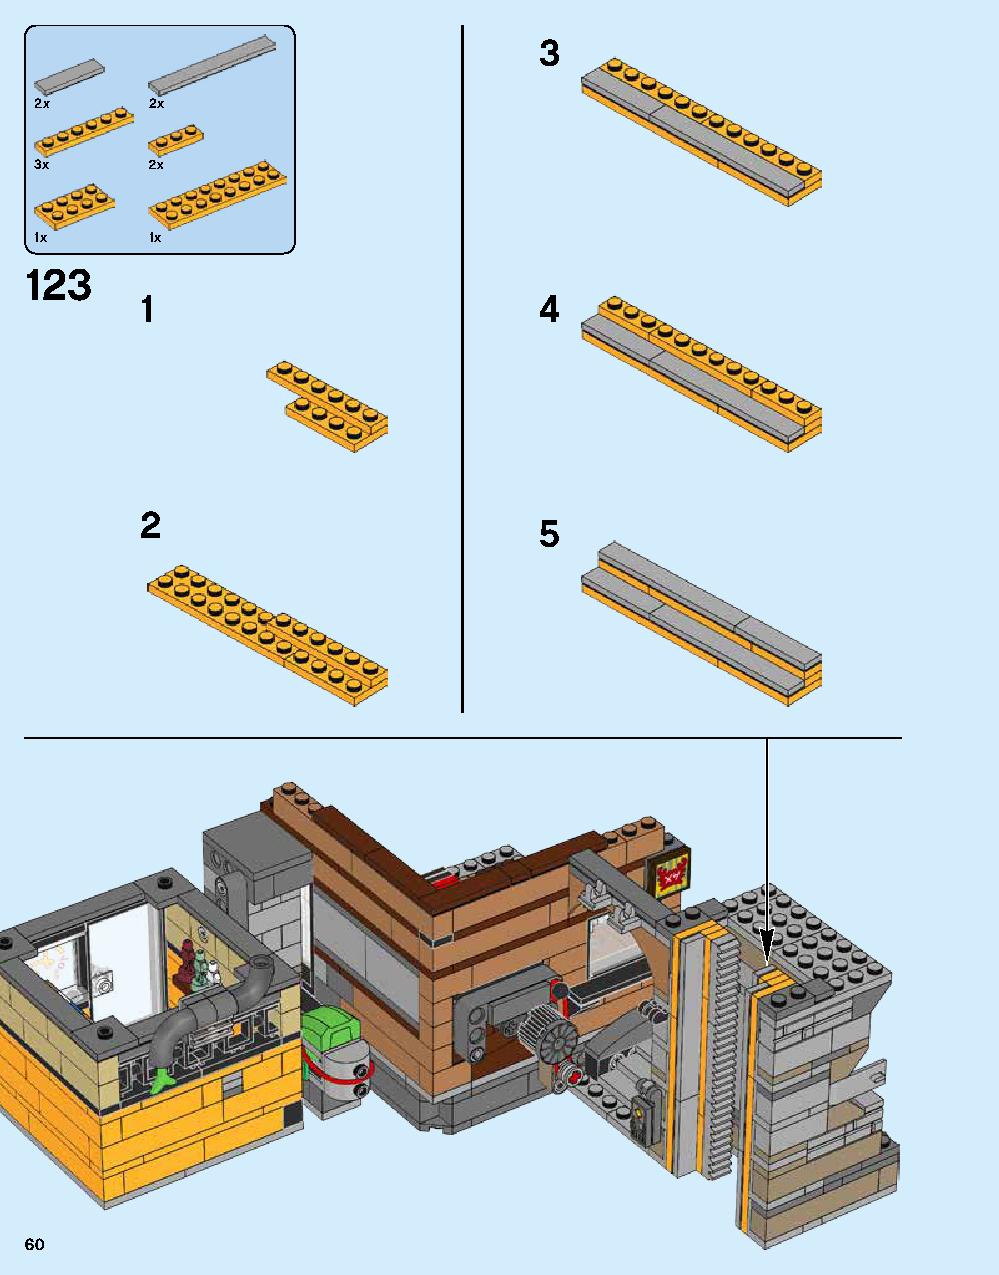 ニンジャゴー シティ 70620 レゴの商品情報 レゴの説明書・組立方法 60 page